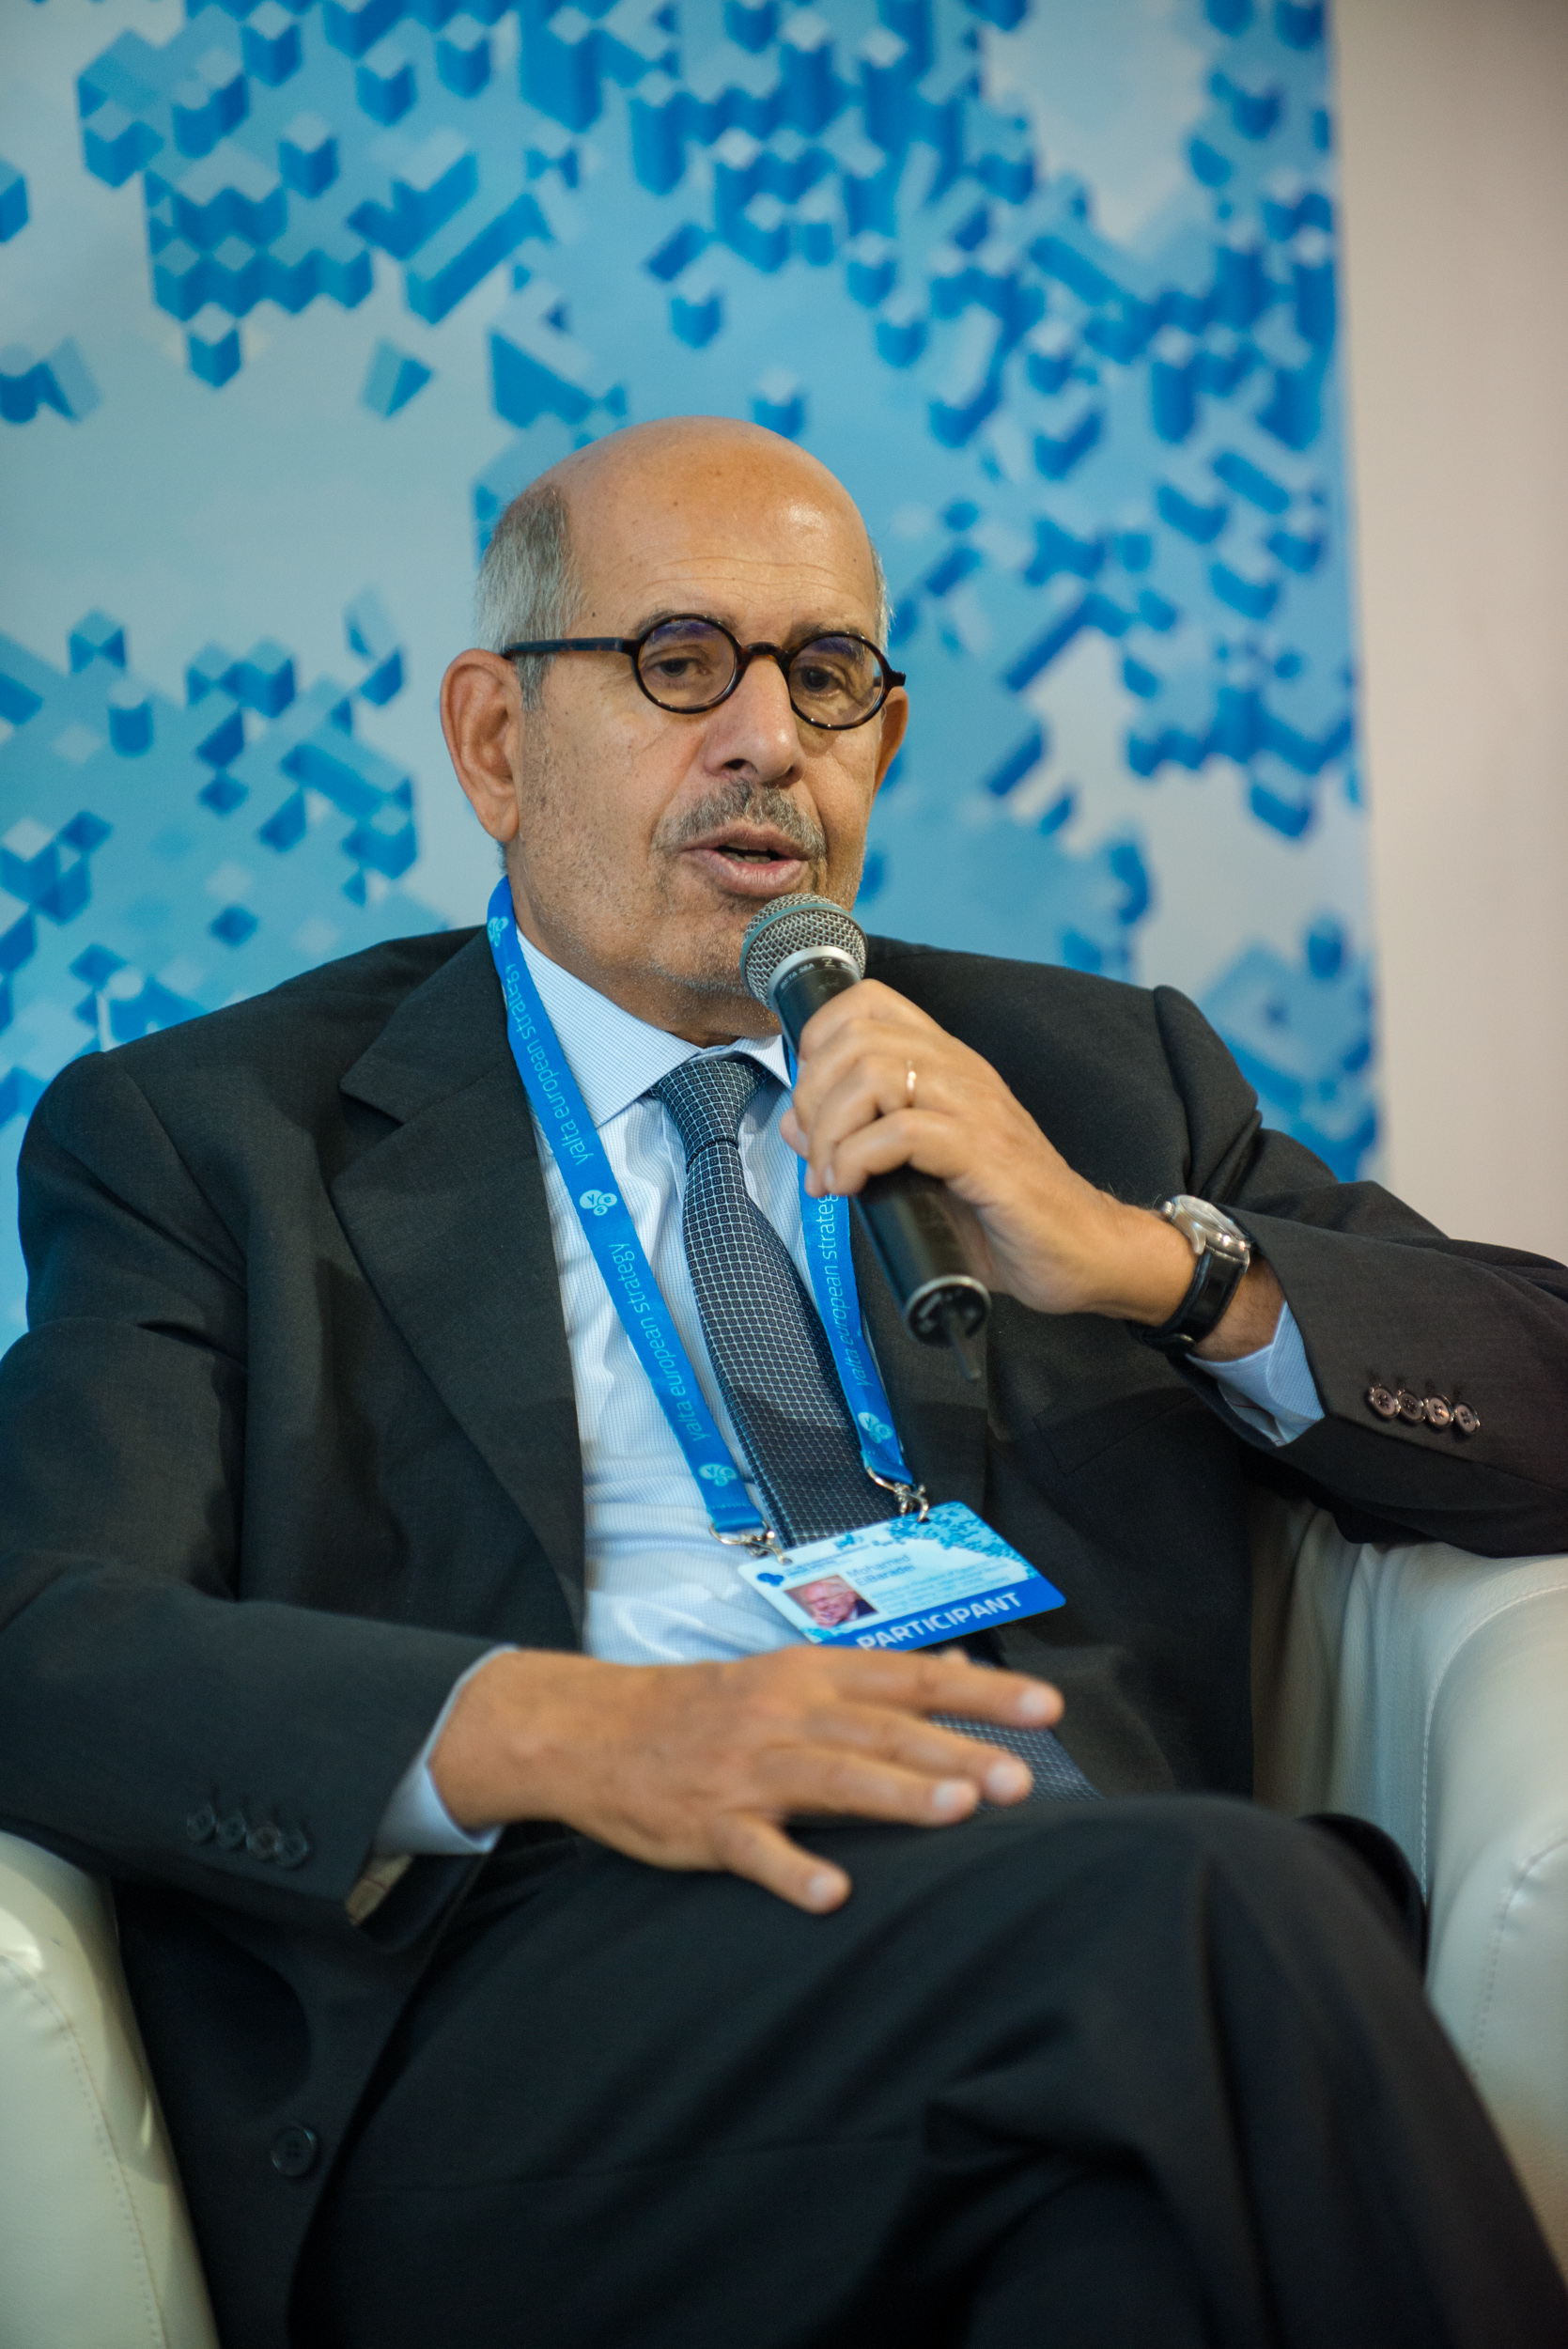 Mohamed ElBaradei photo 3